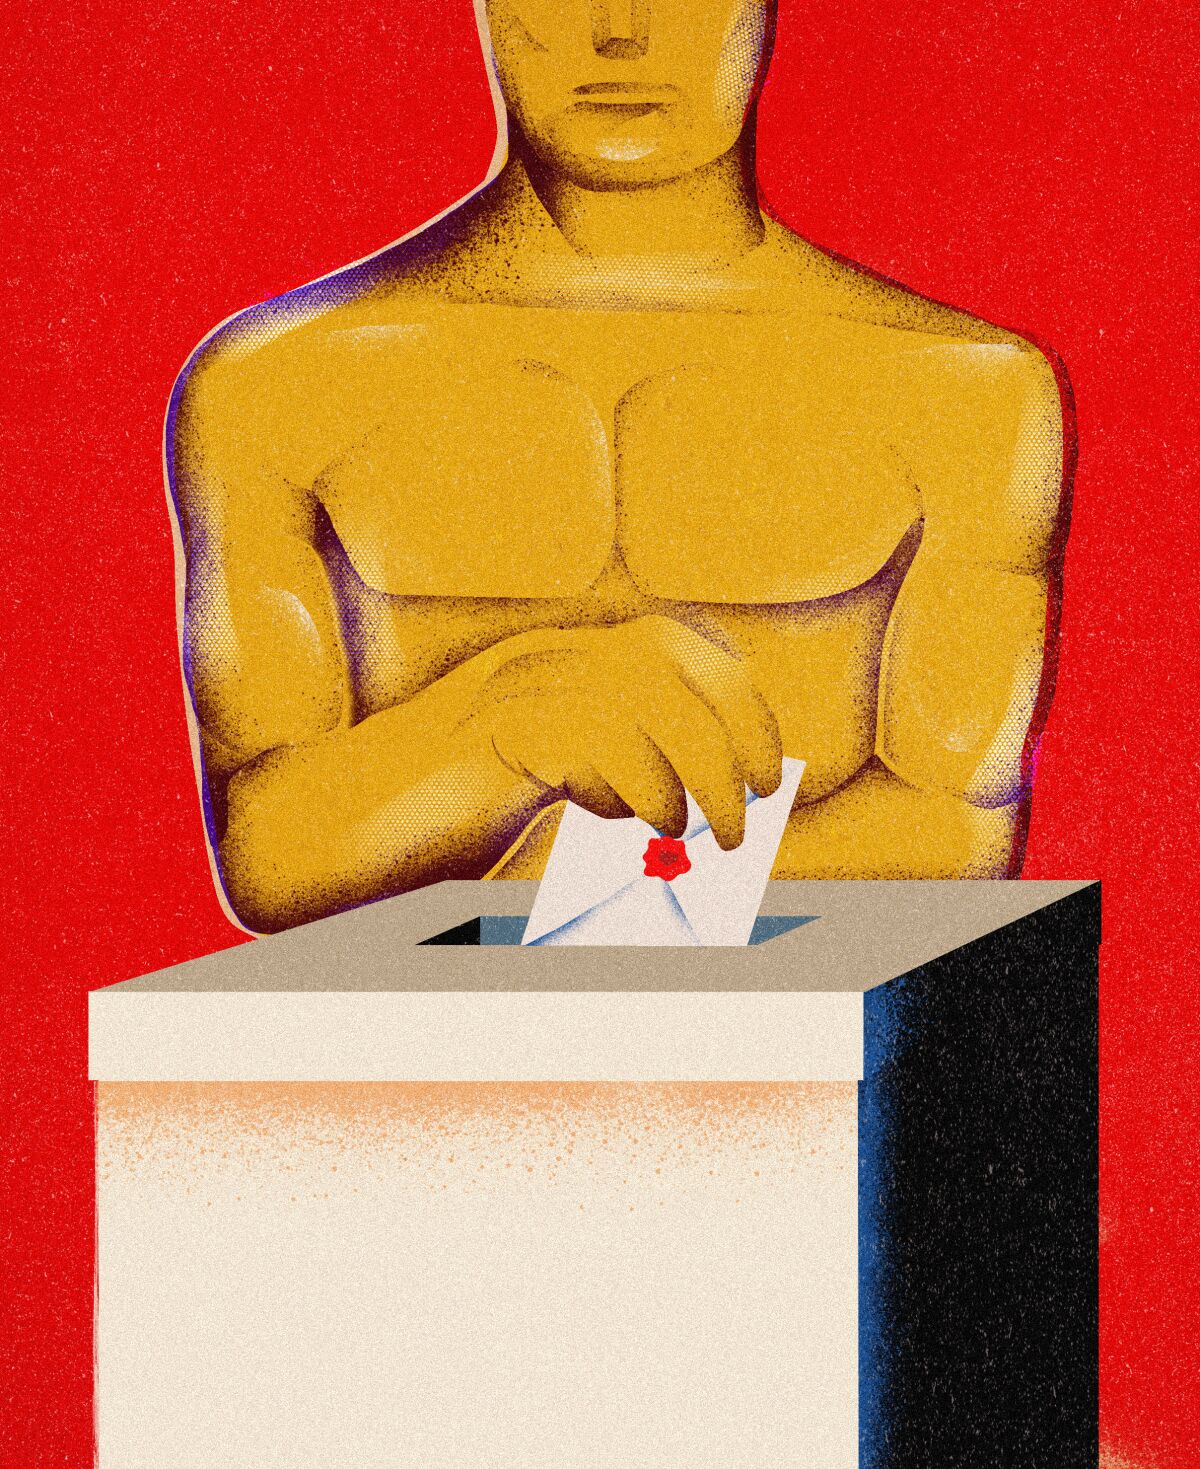 Oscar statue putting an envelope into a ballot box